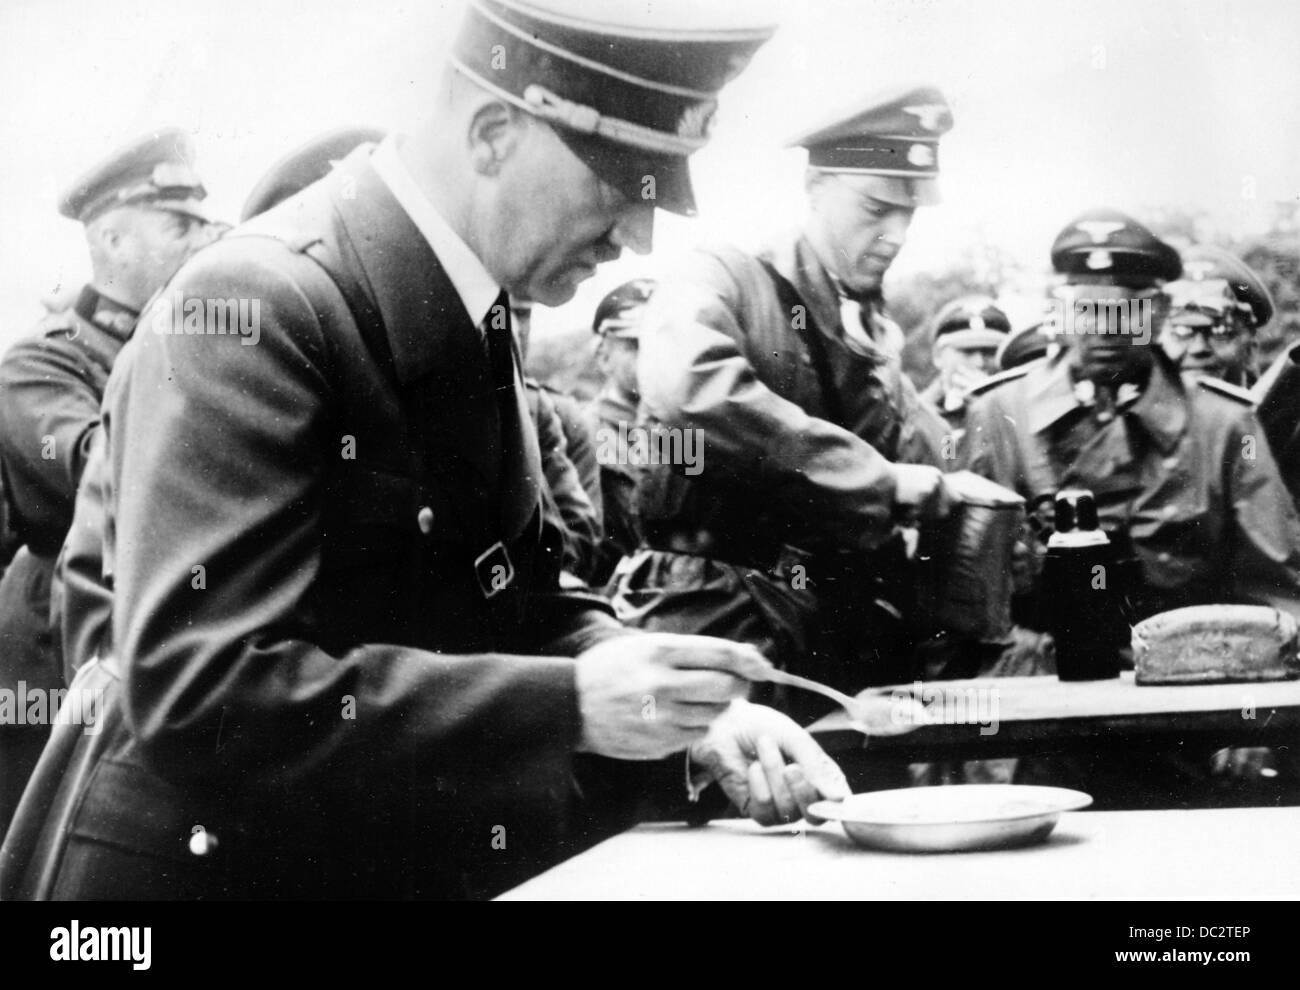 La propagande nazie! L'image montre Adolf Hitler lors d'une visite au front en mangeant un repas de soldat en avril 1941. Fotoarchiv für Zeitgeschichte Banque D'Images